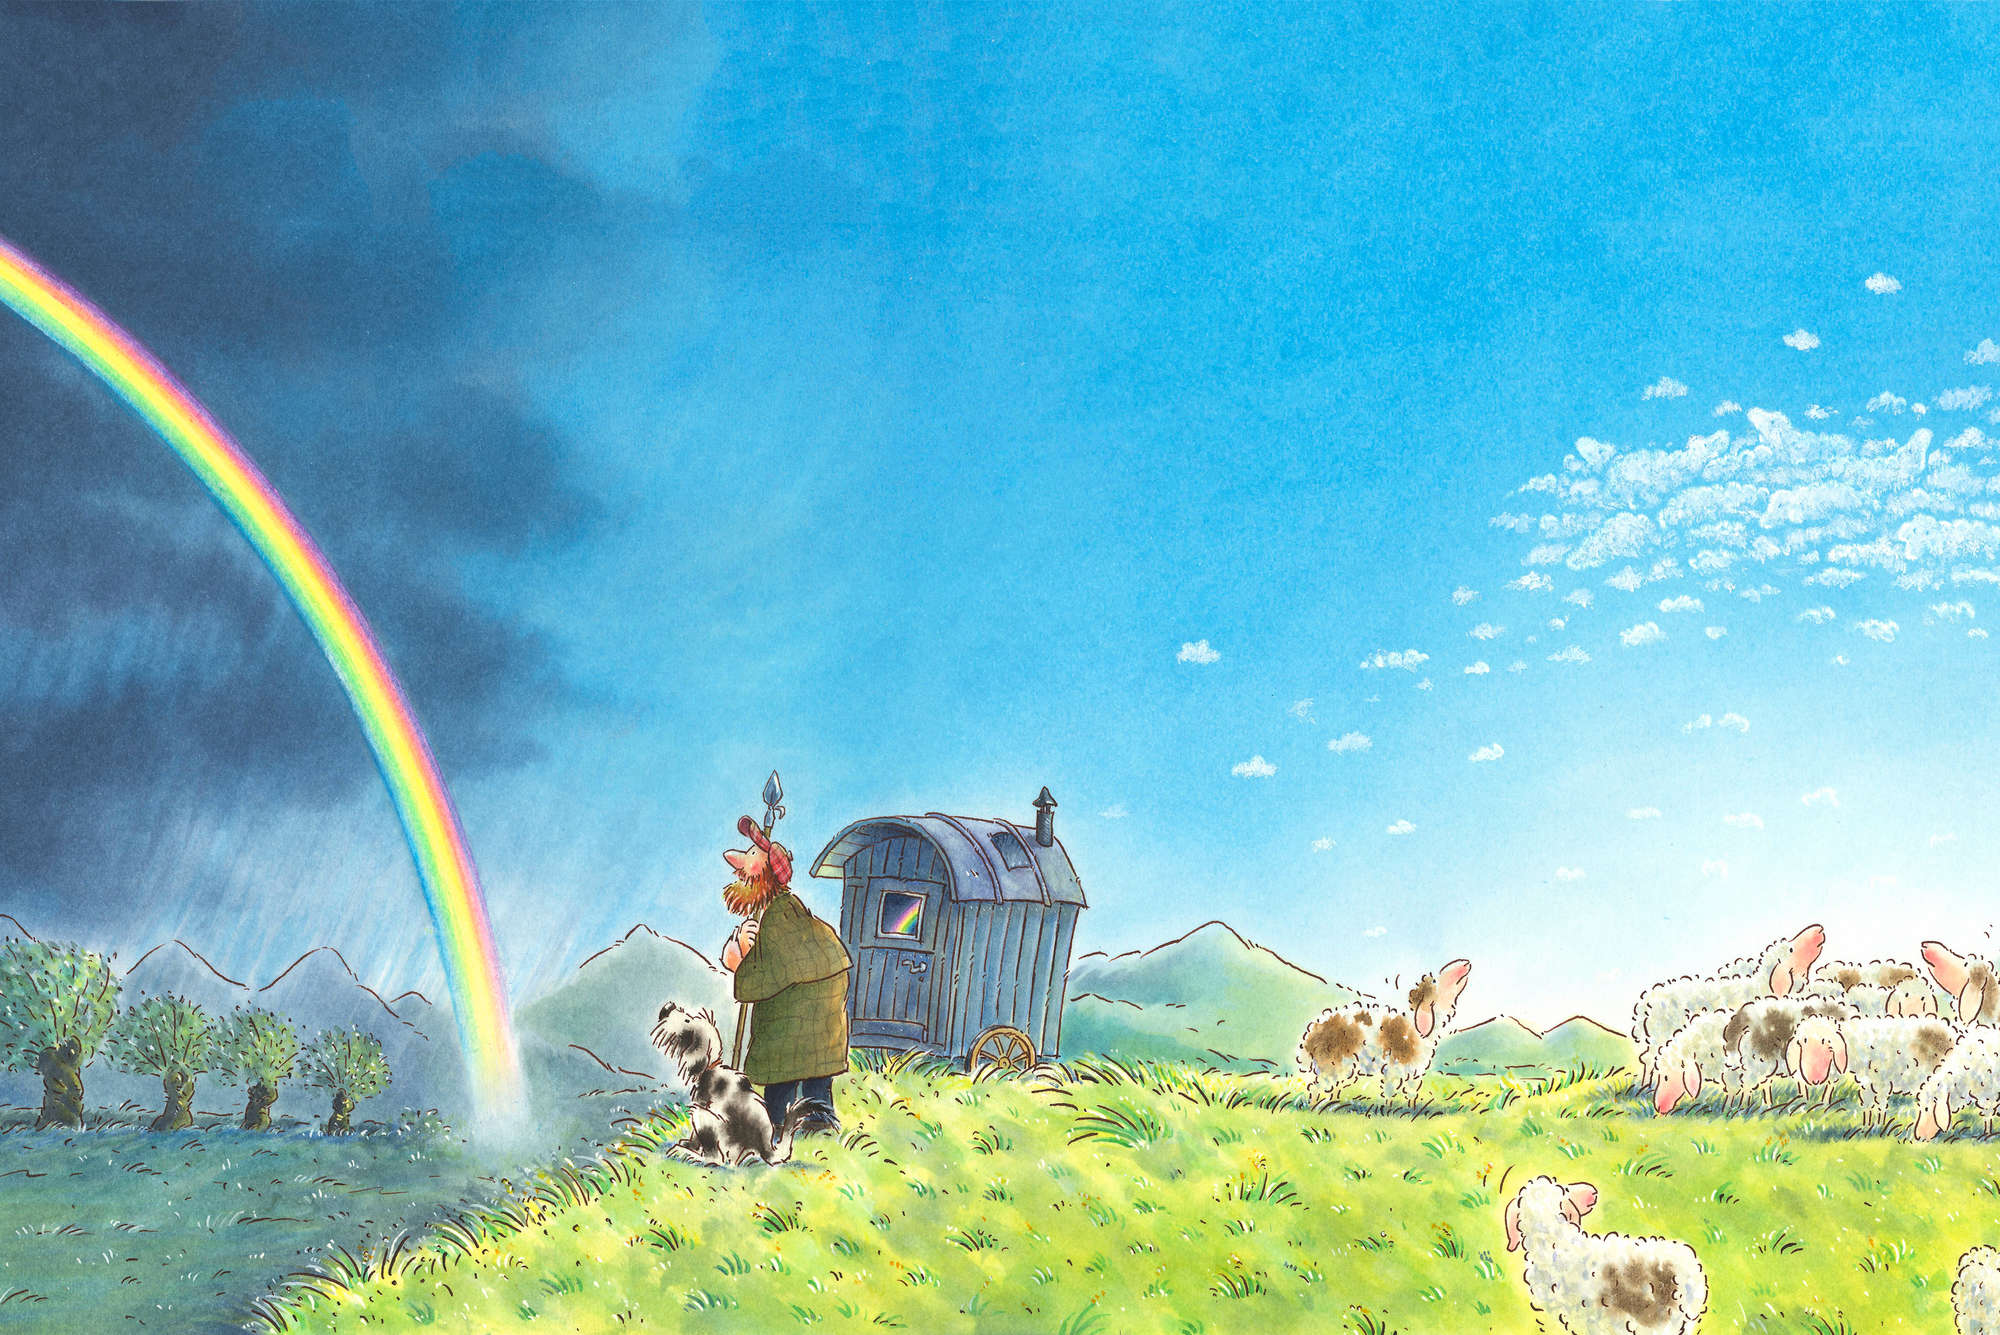             Papel pintado infantil Pastor con perro y arco iris sobre vellón liso mate
        